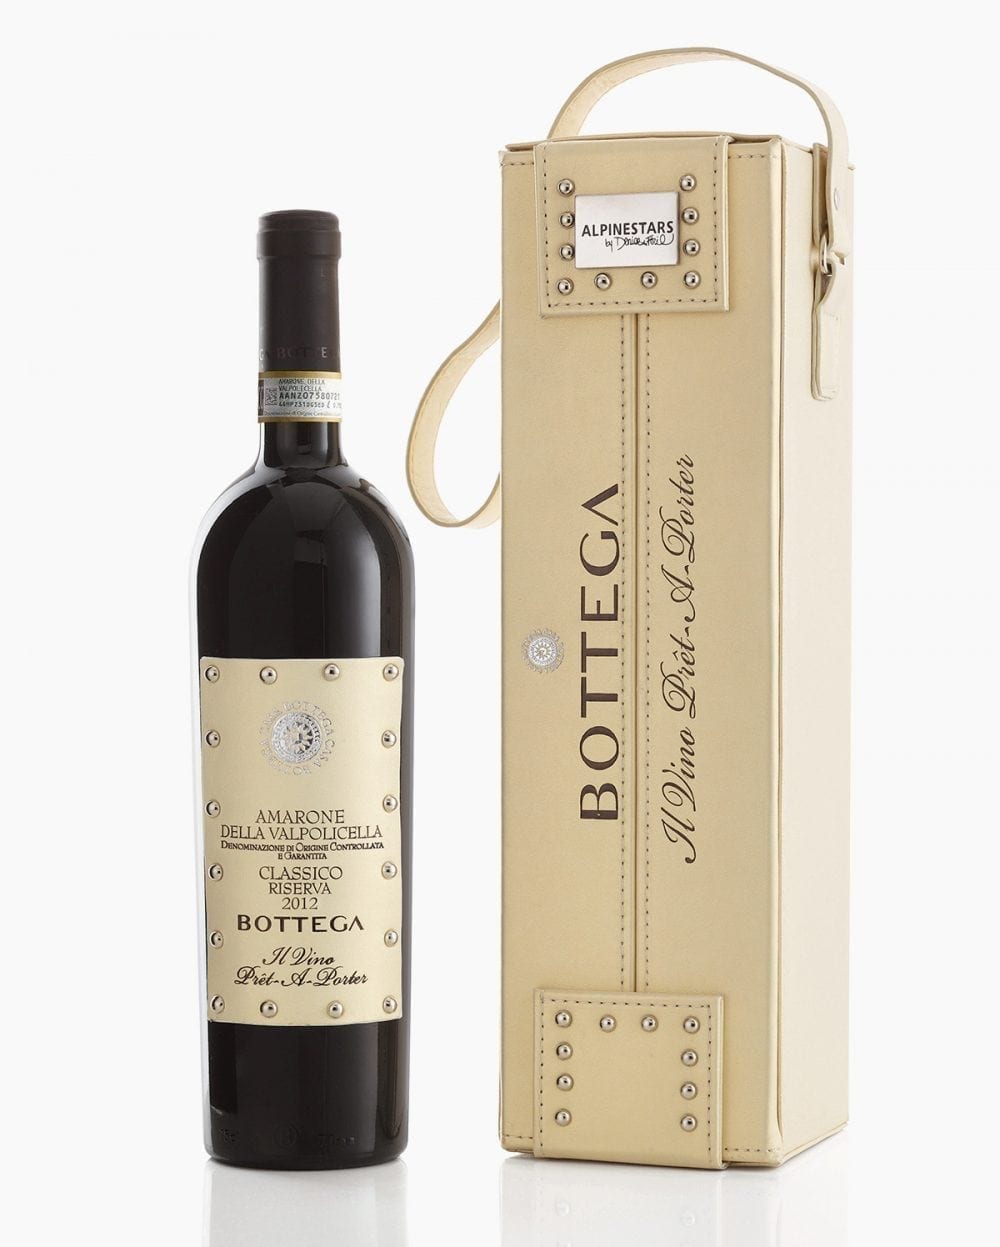 Soave classico doc - Italian Bottega - White Wine Spa